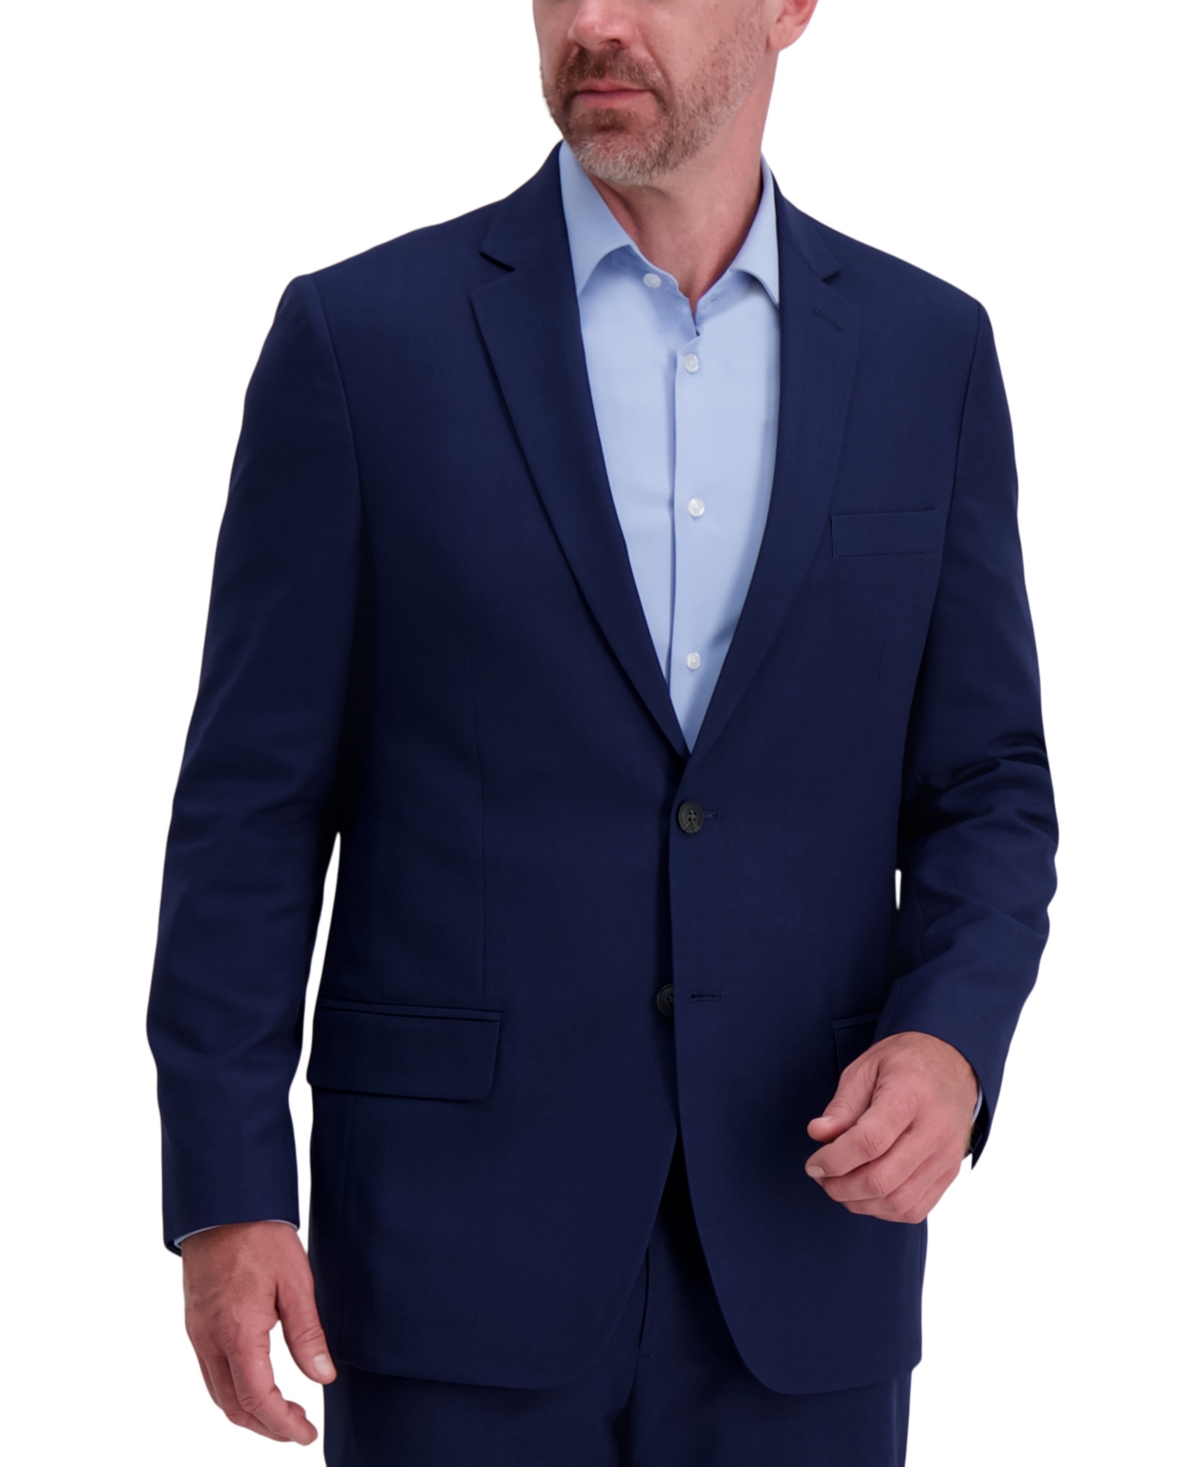 Men's Smart Wash Classic Fit Suit Separates Jackets - Charcoal